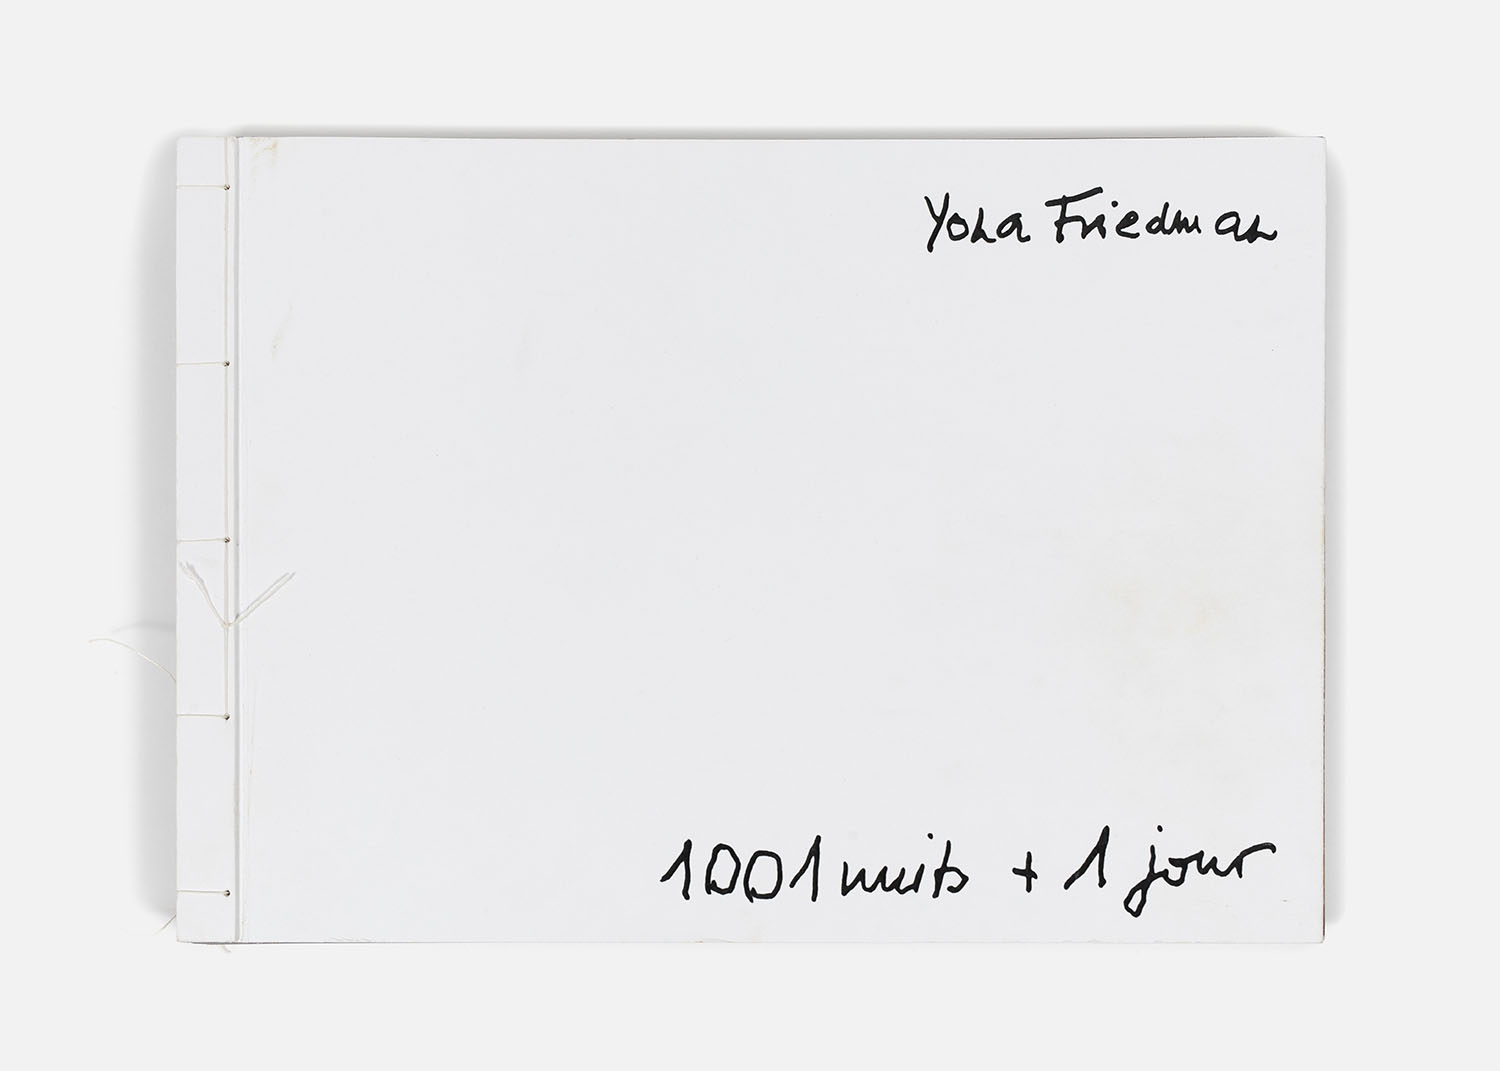 Yona Friedman - 1001 nuits + 1 jour, 2004 - 